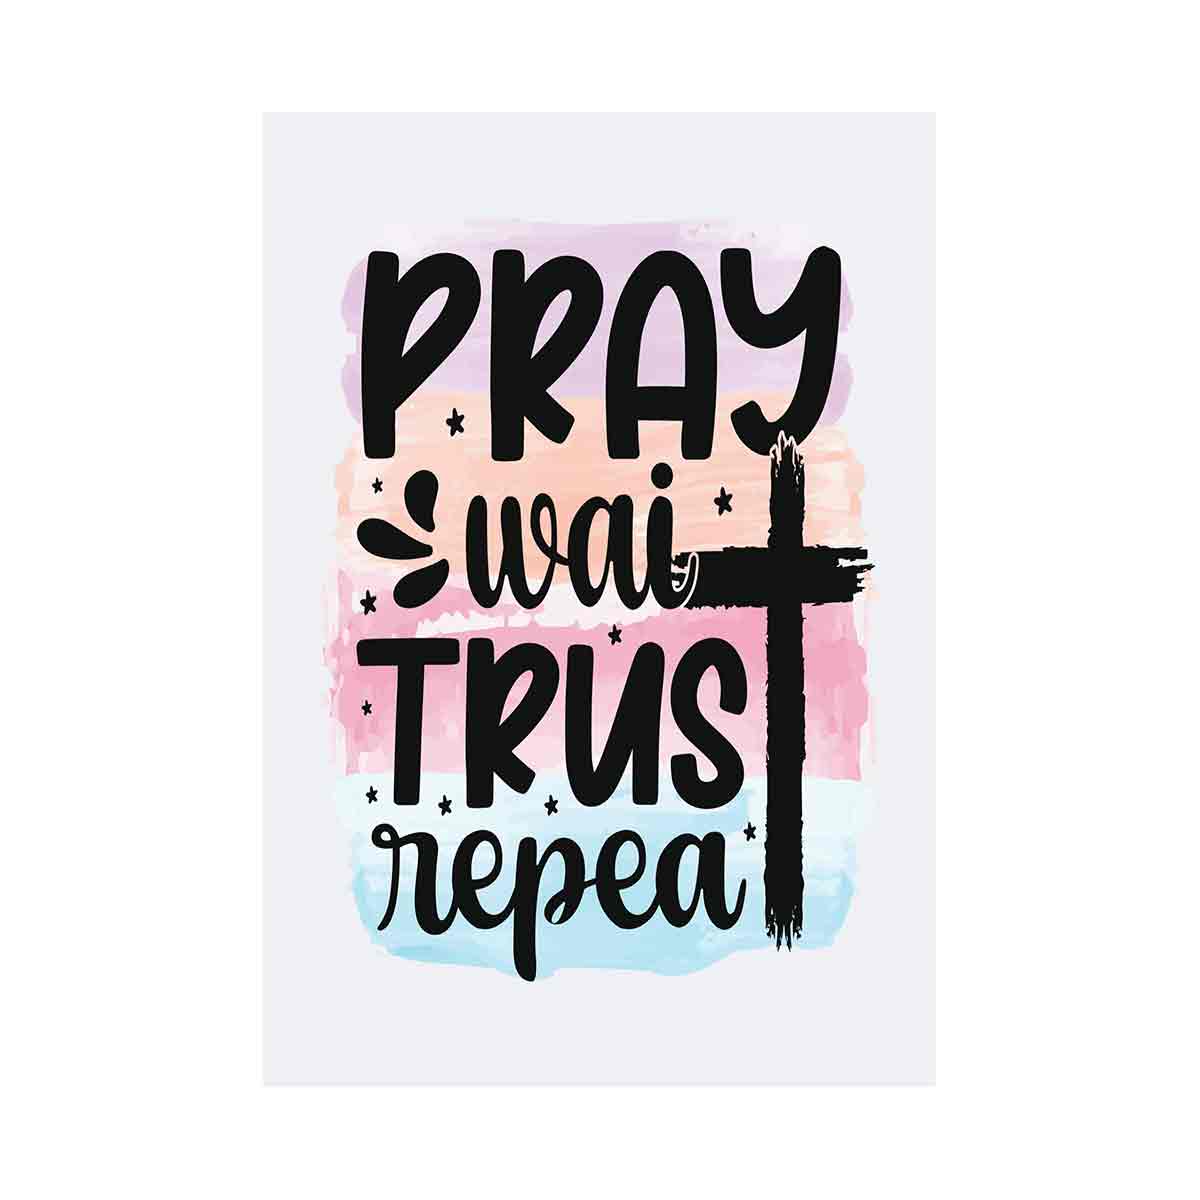 Pray wait trust repeat